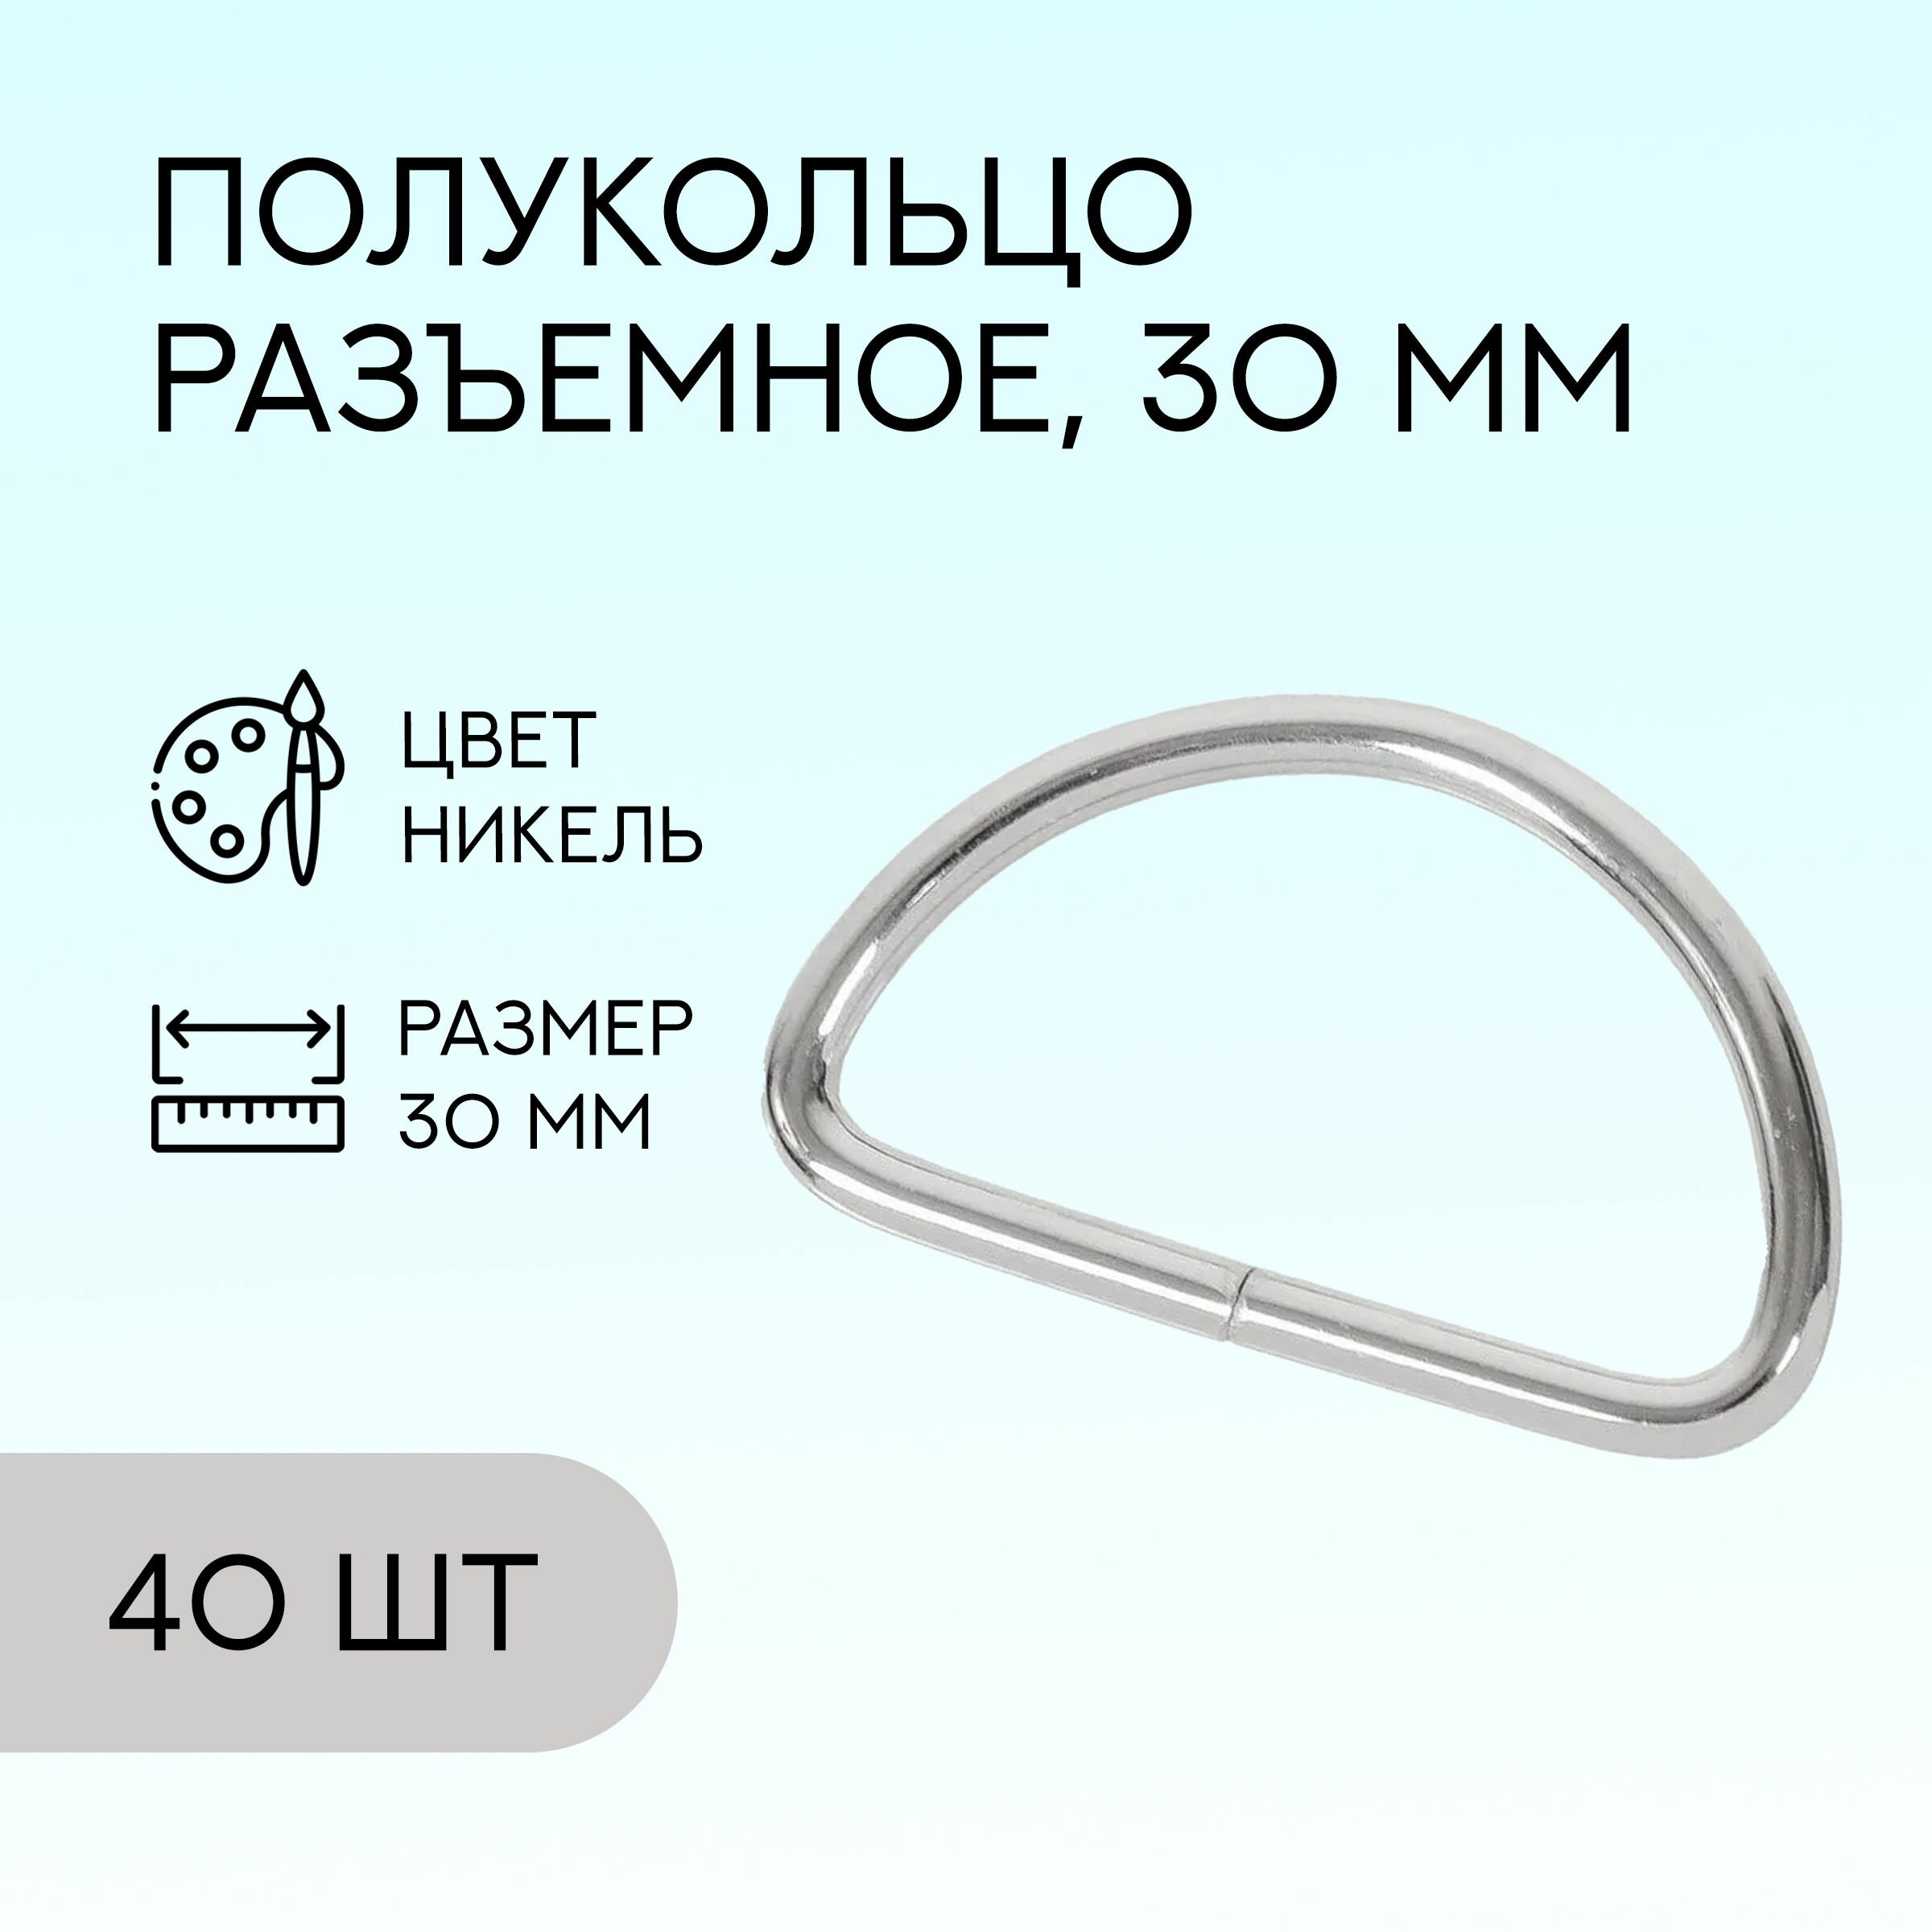 Полукольцо разъемное, 30 мм, никель, 40 шт. / кольцо для сумок и рукоделия